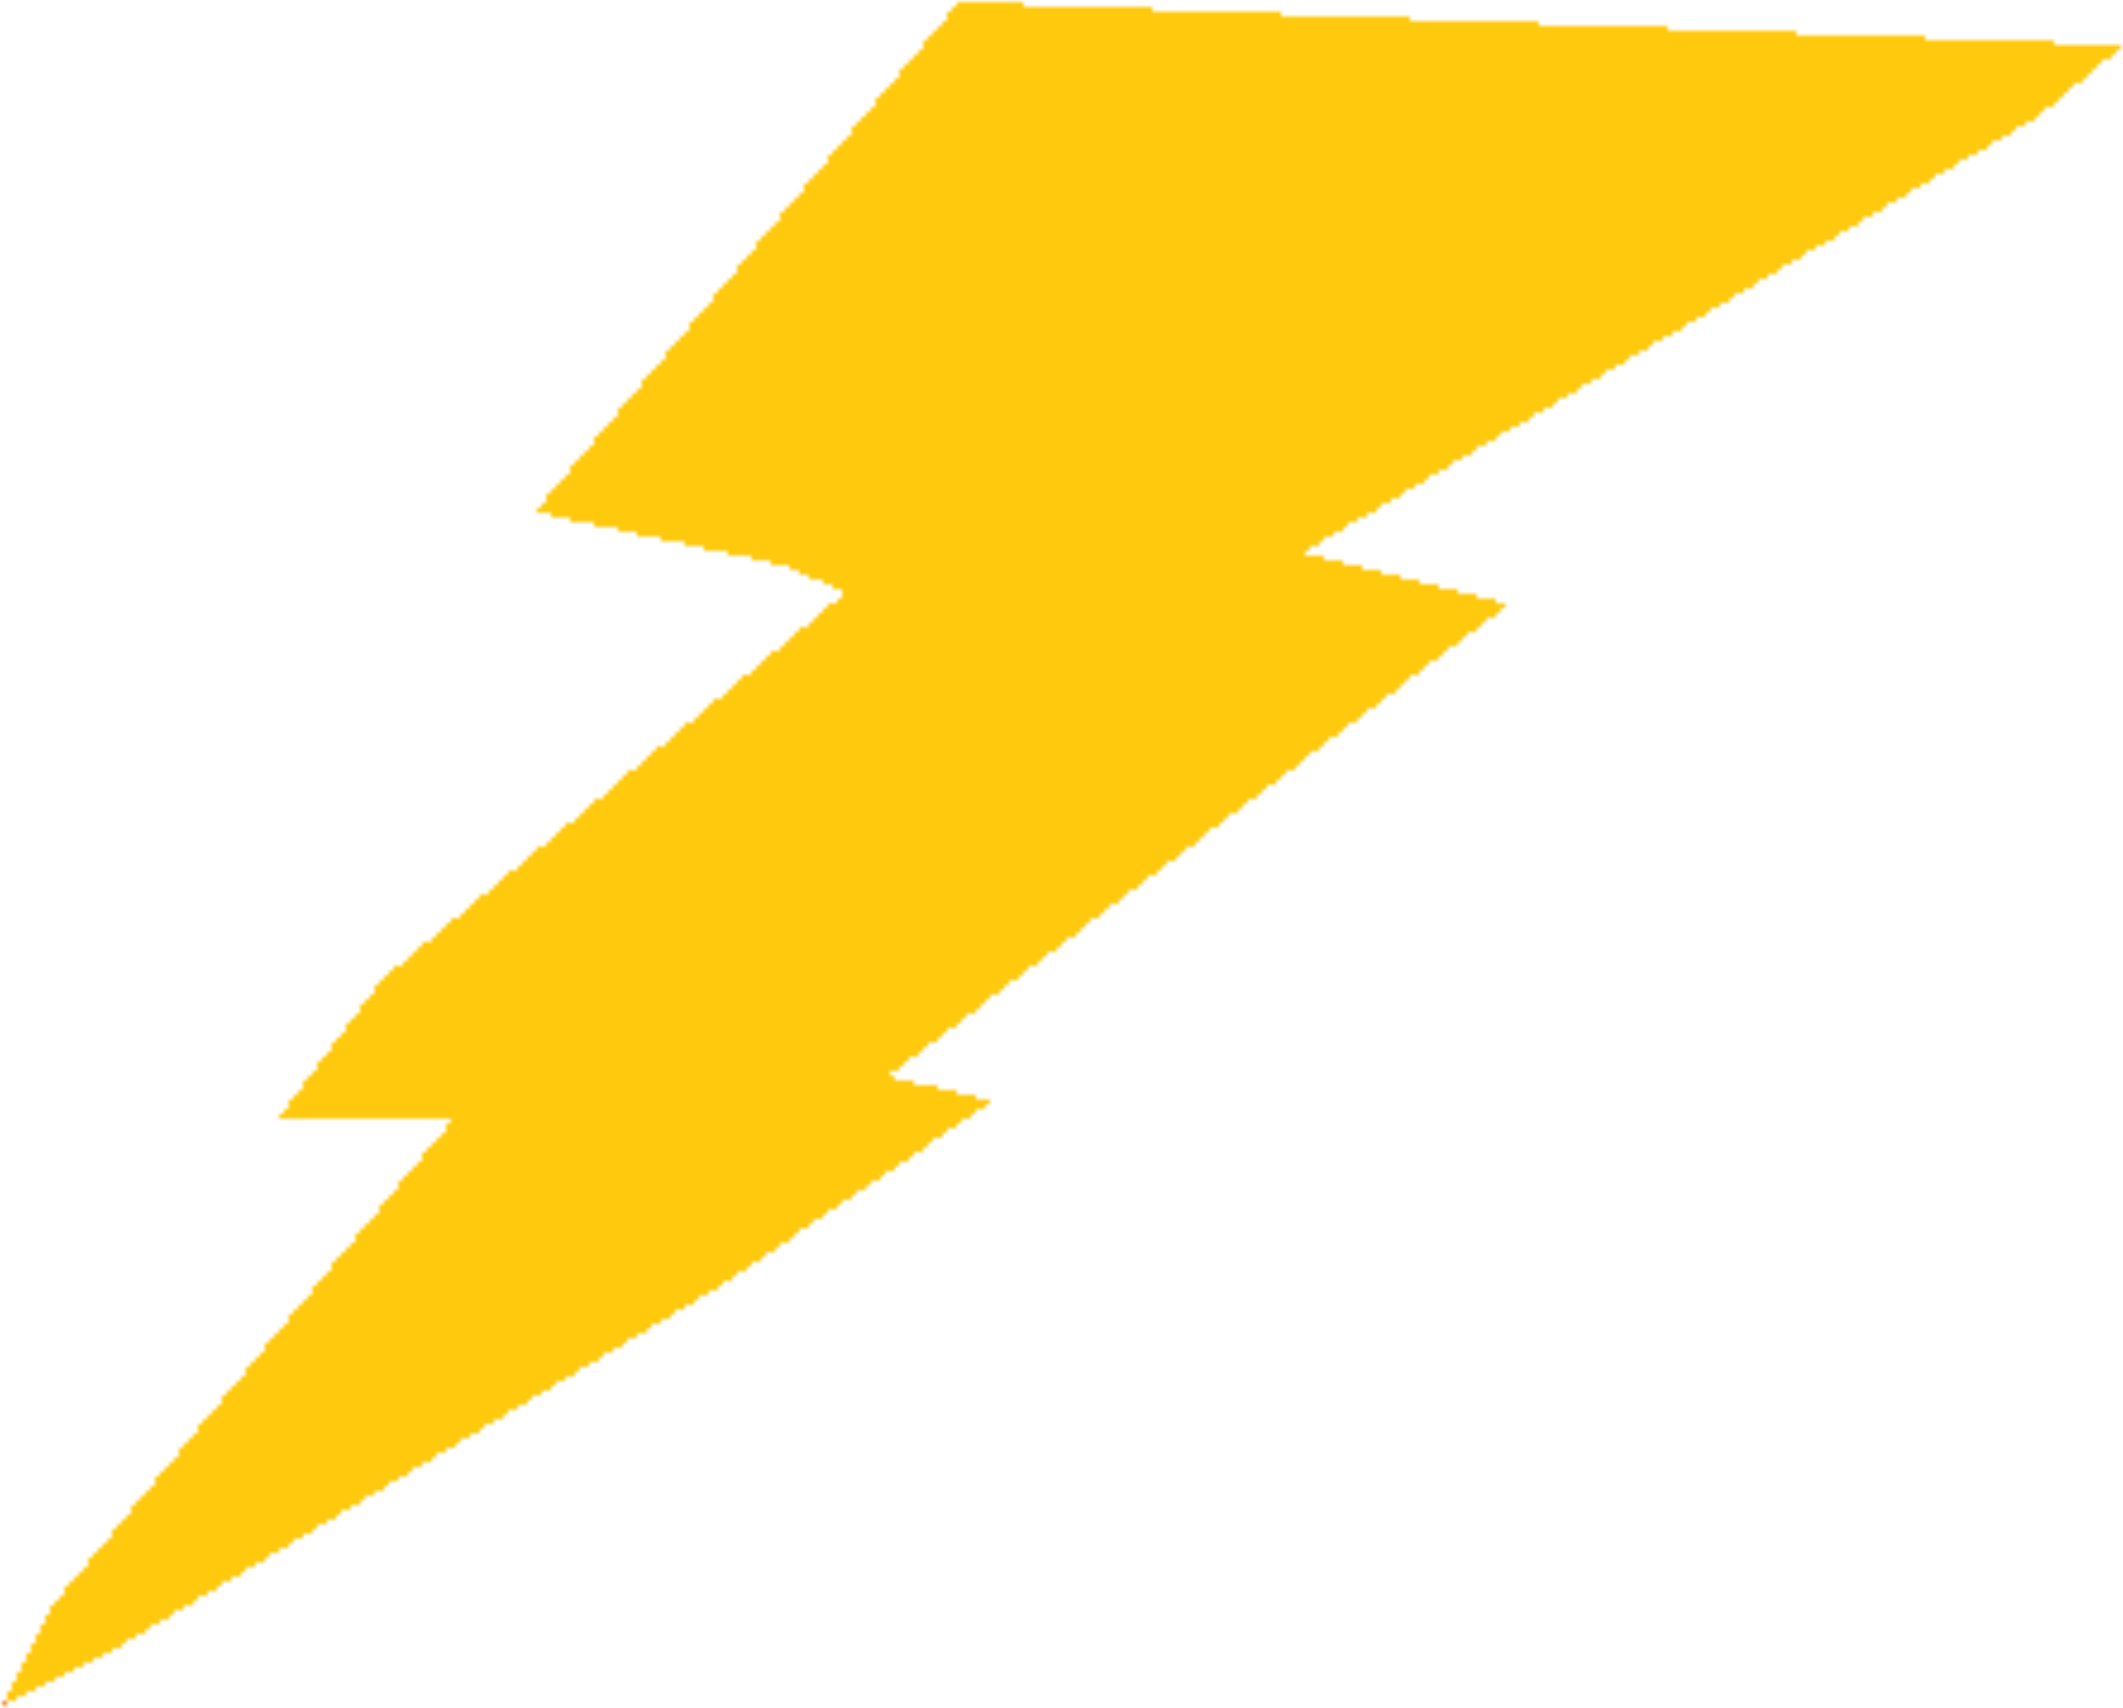 Clipart - Lightning Bolt